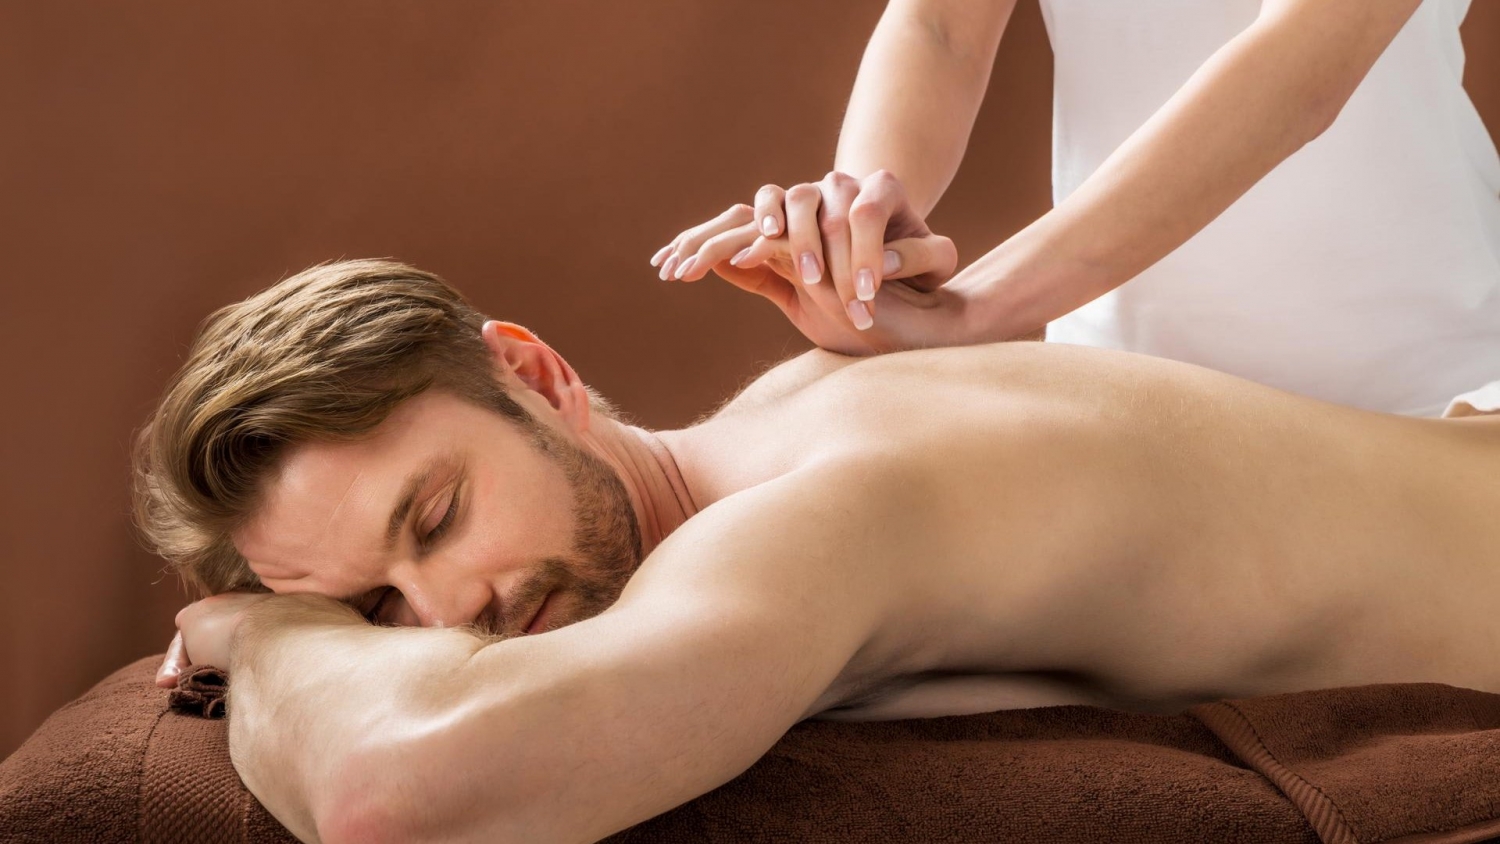 Cosa significa massaggio greco?